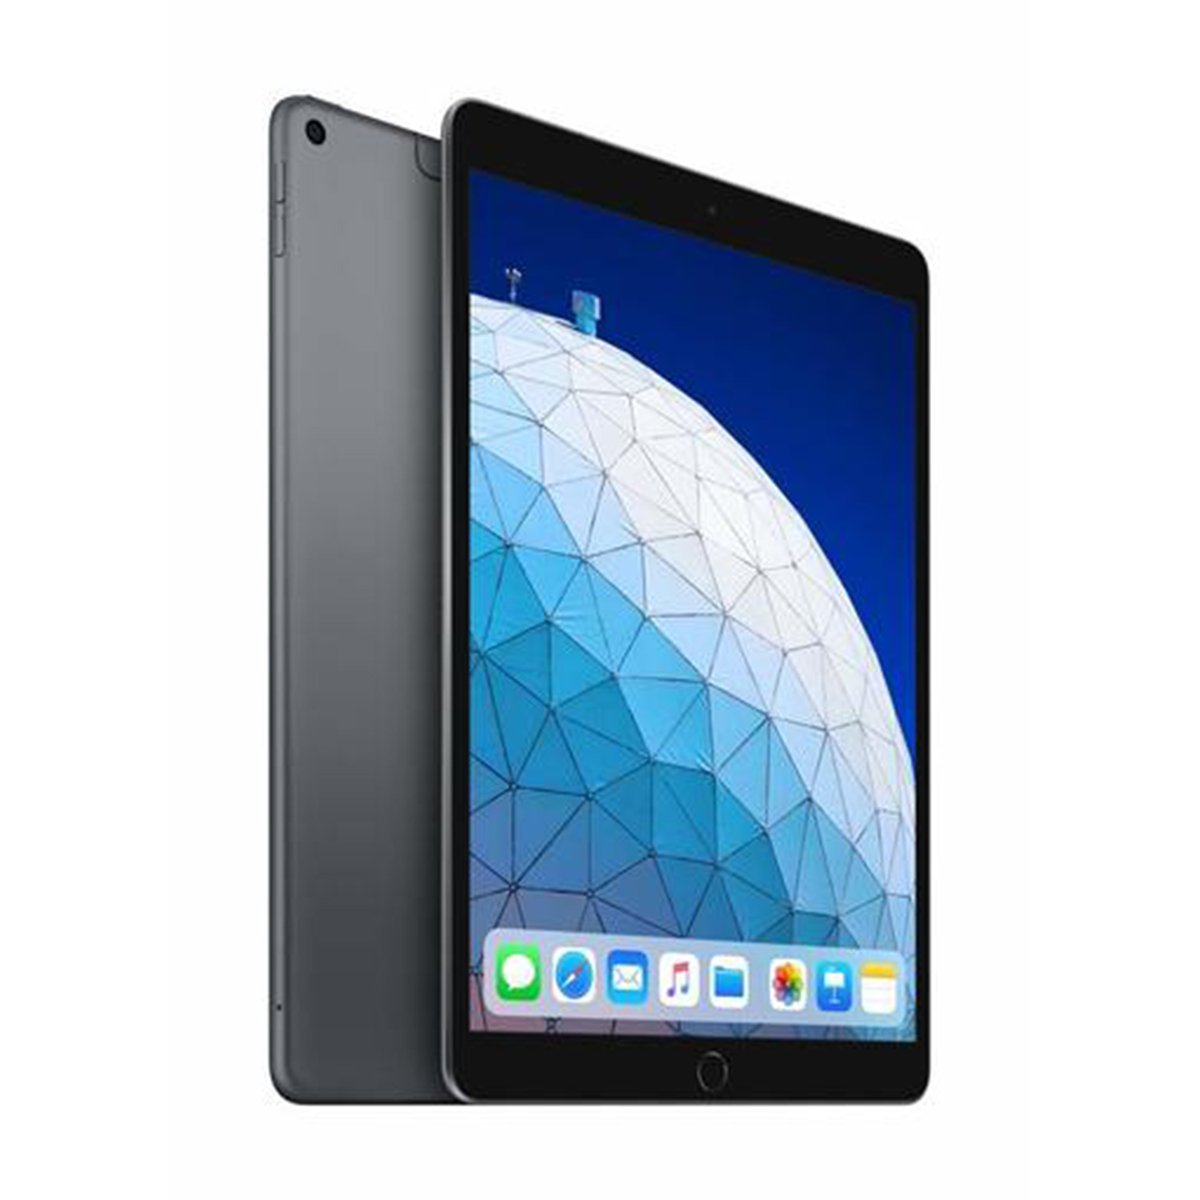 Apple iPad Air (2019) - iOS (Wi-Fi + Cellular, 64GB) 10.5inch Space Grey